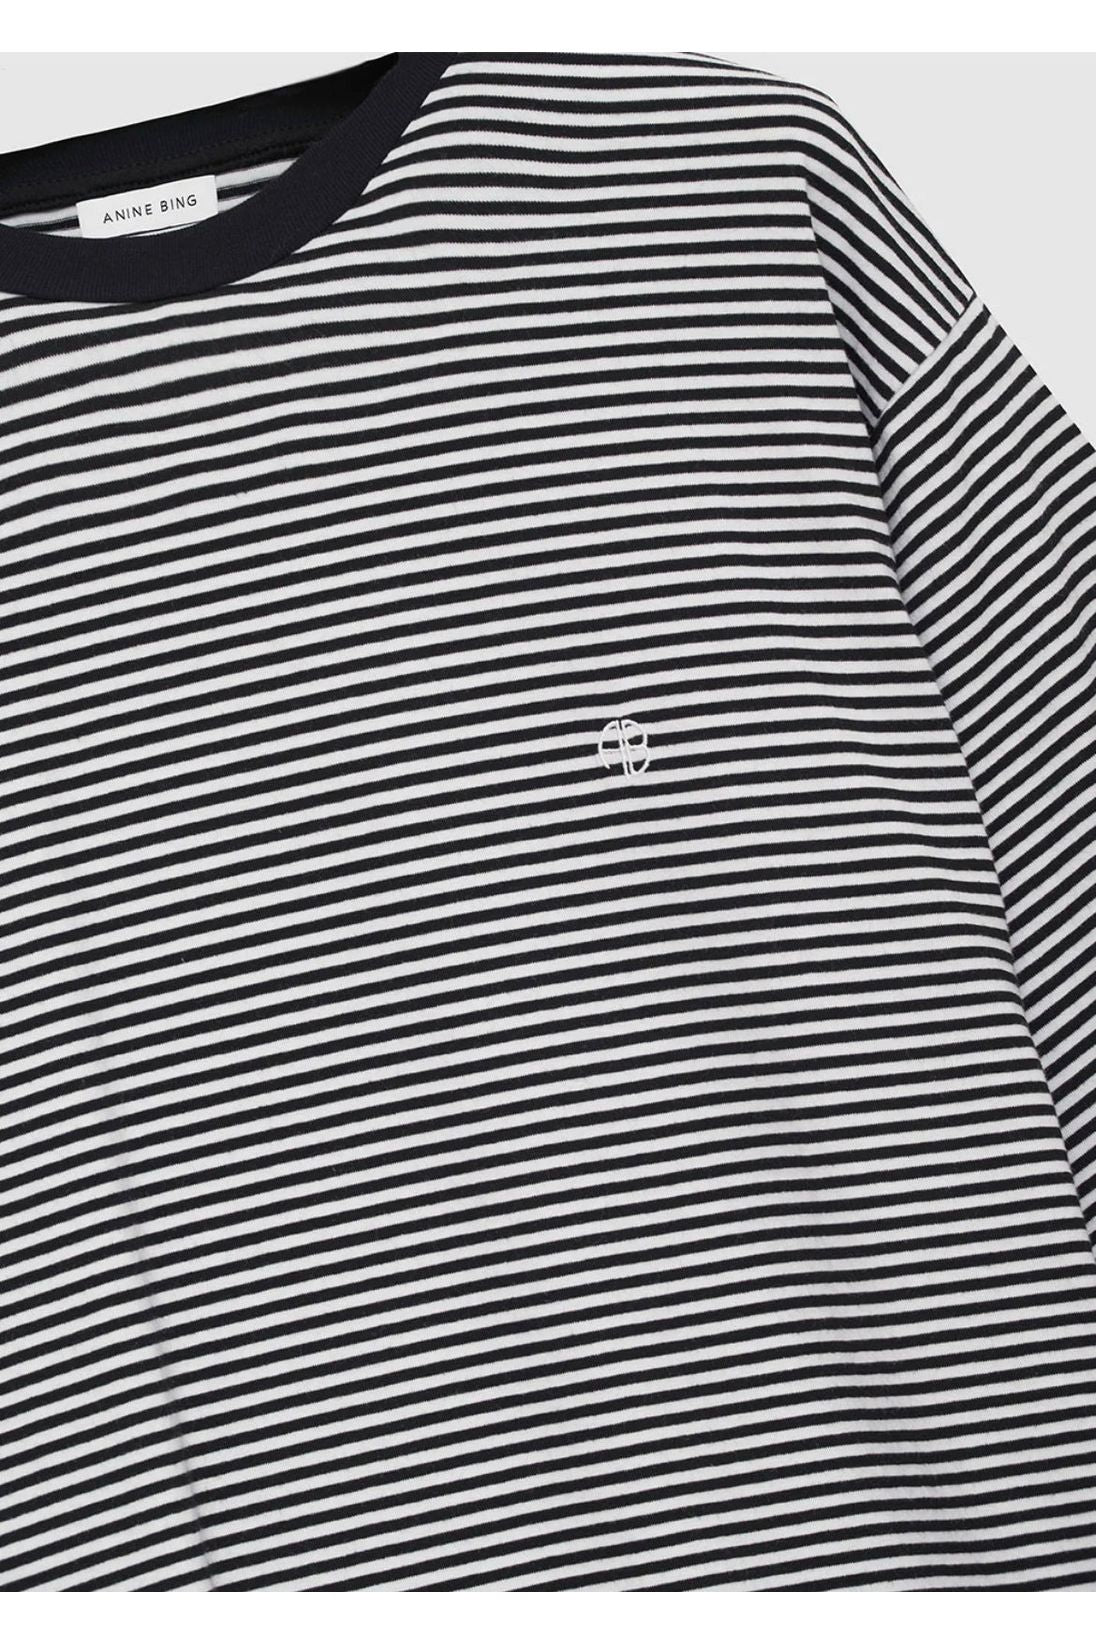 Bo Tee in Black / White Stripe by Anine Bing